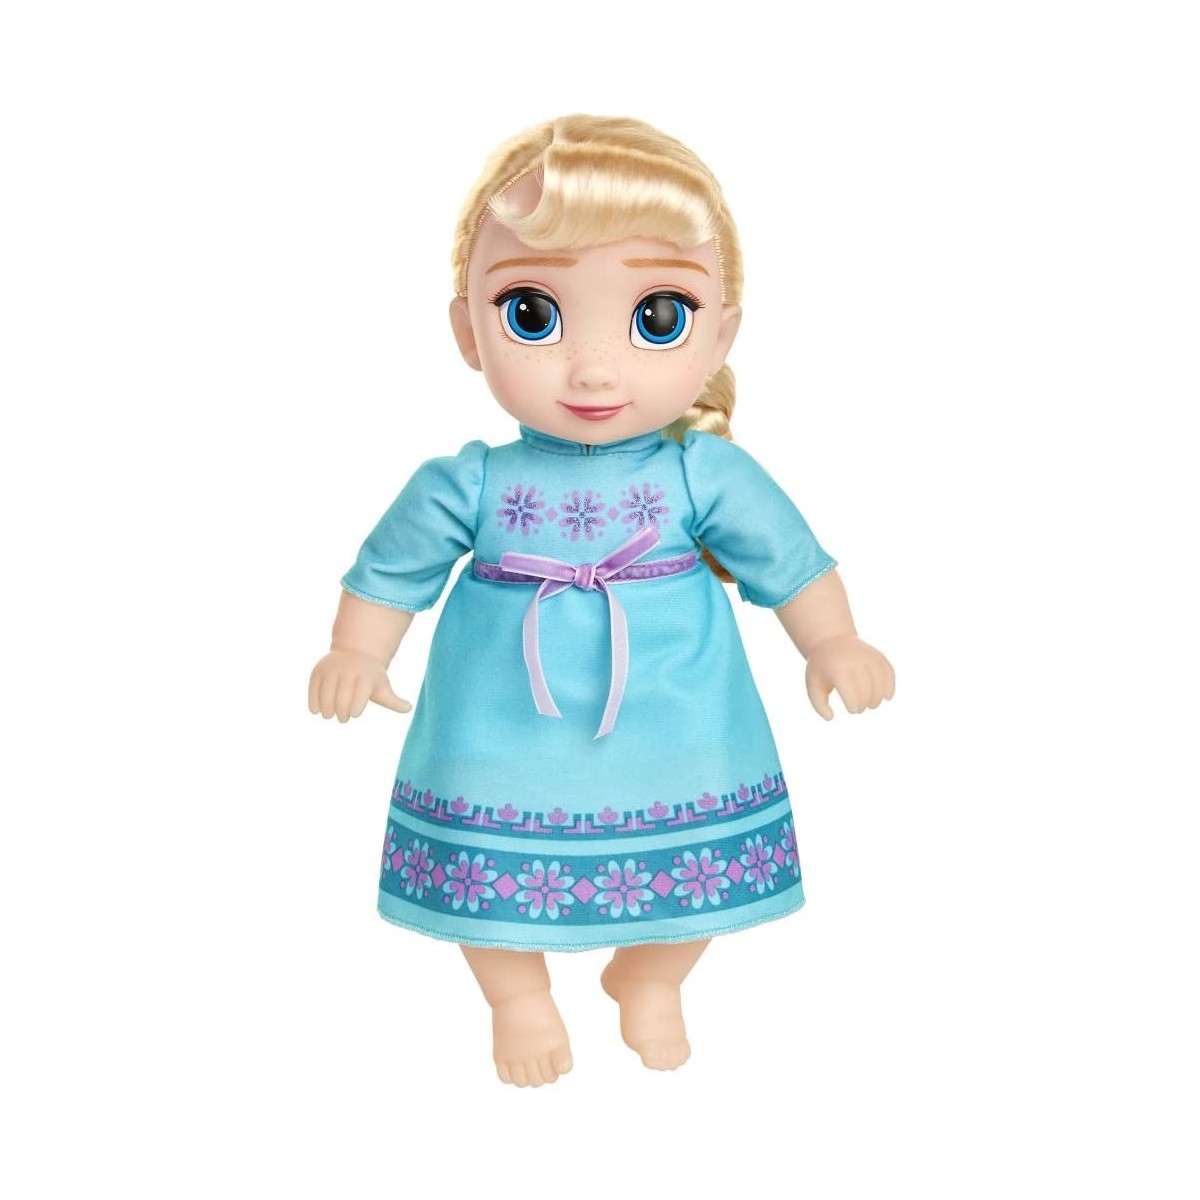 Bambola Baby Elsa di Frozen 2 - Disney, Giochi Preziosi